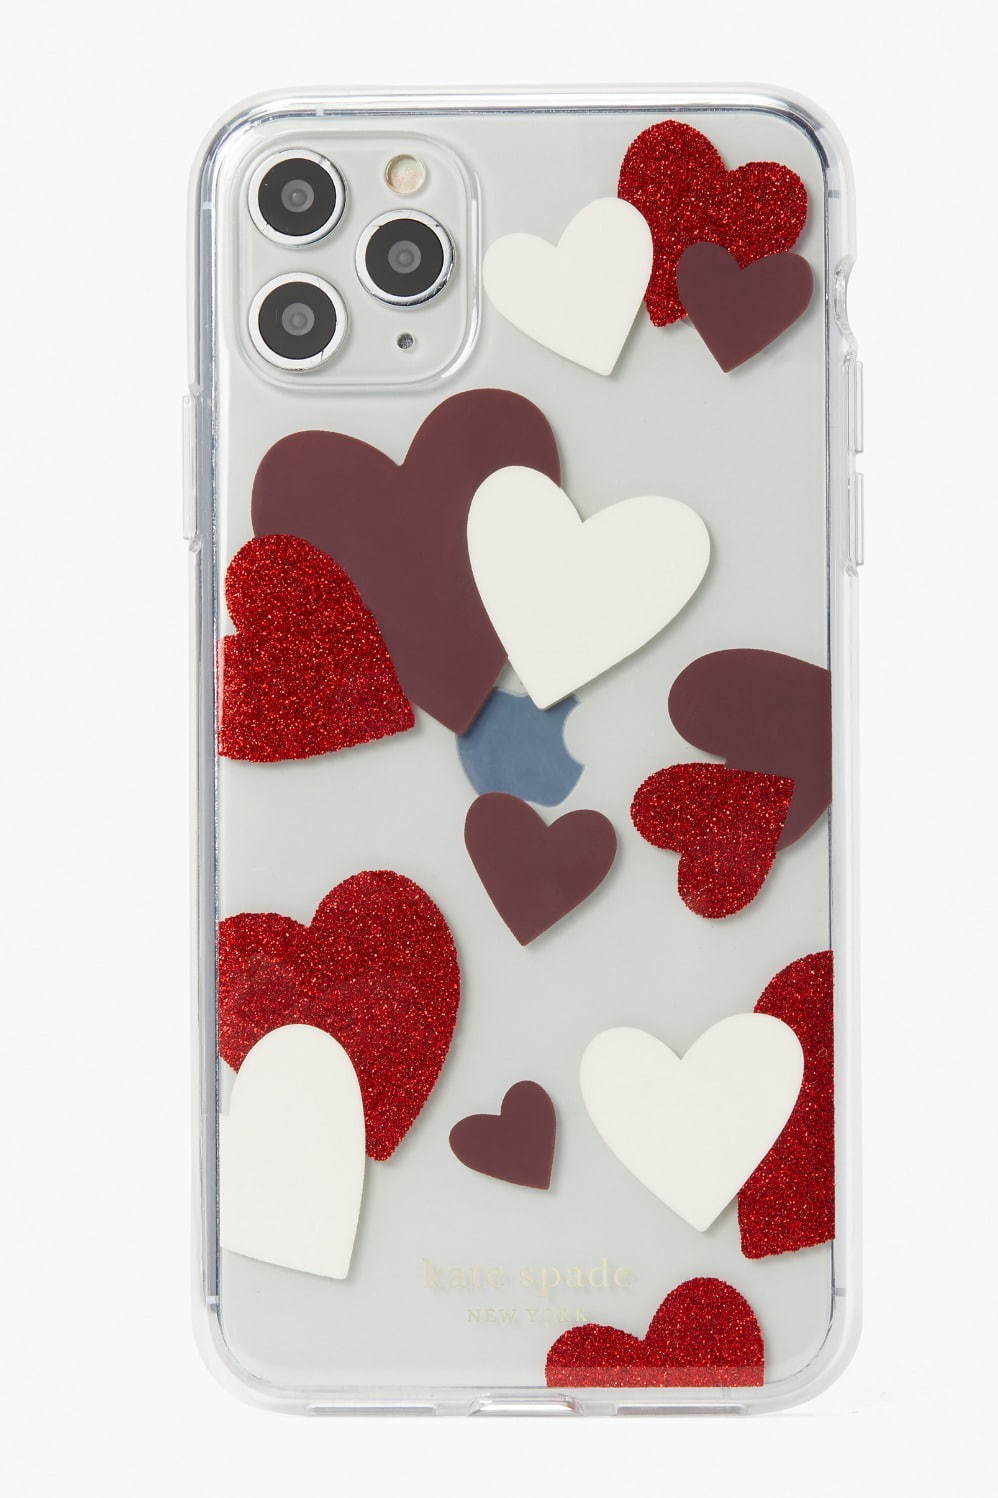 ケイト・スペード2021年バレンタインギフト、“ハート”モチーフの財布&3Dコインパース｜写真5